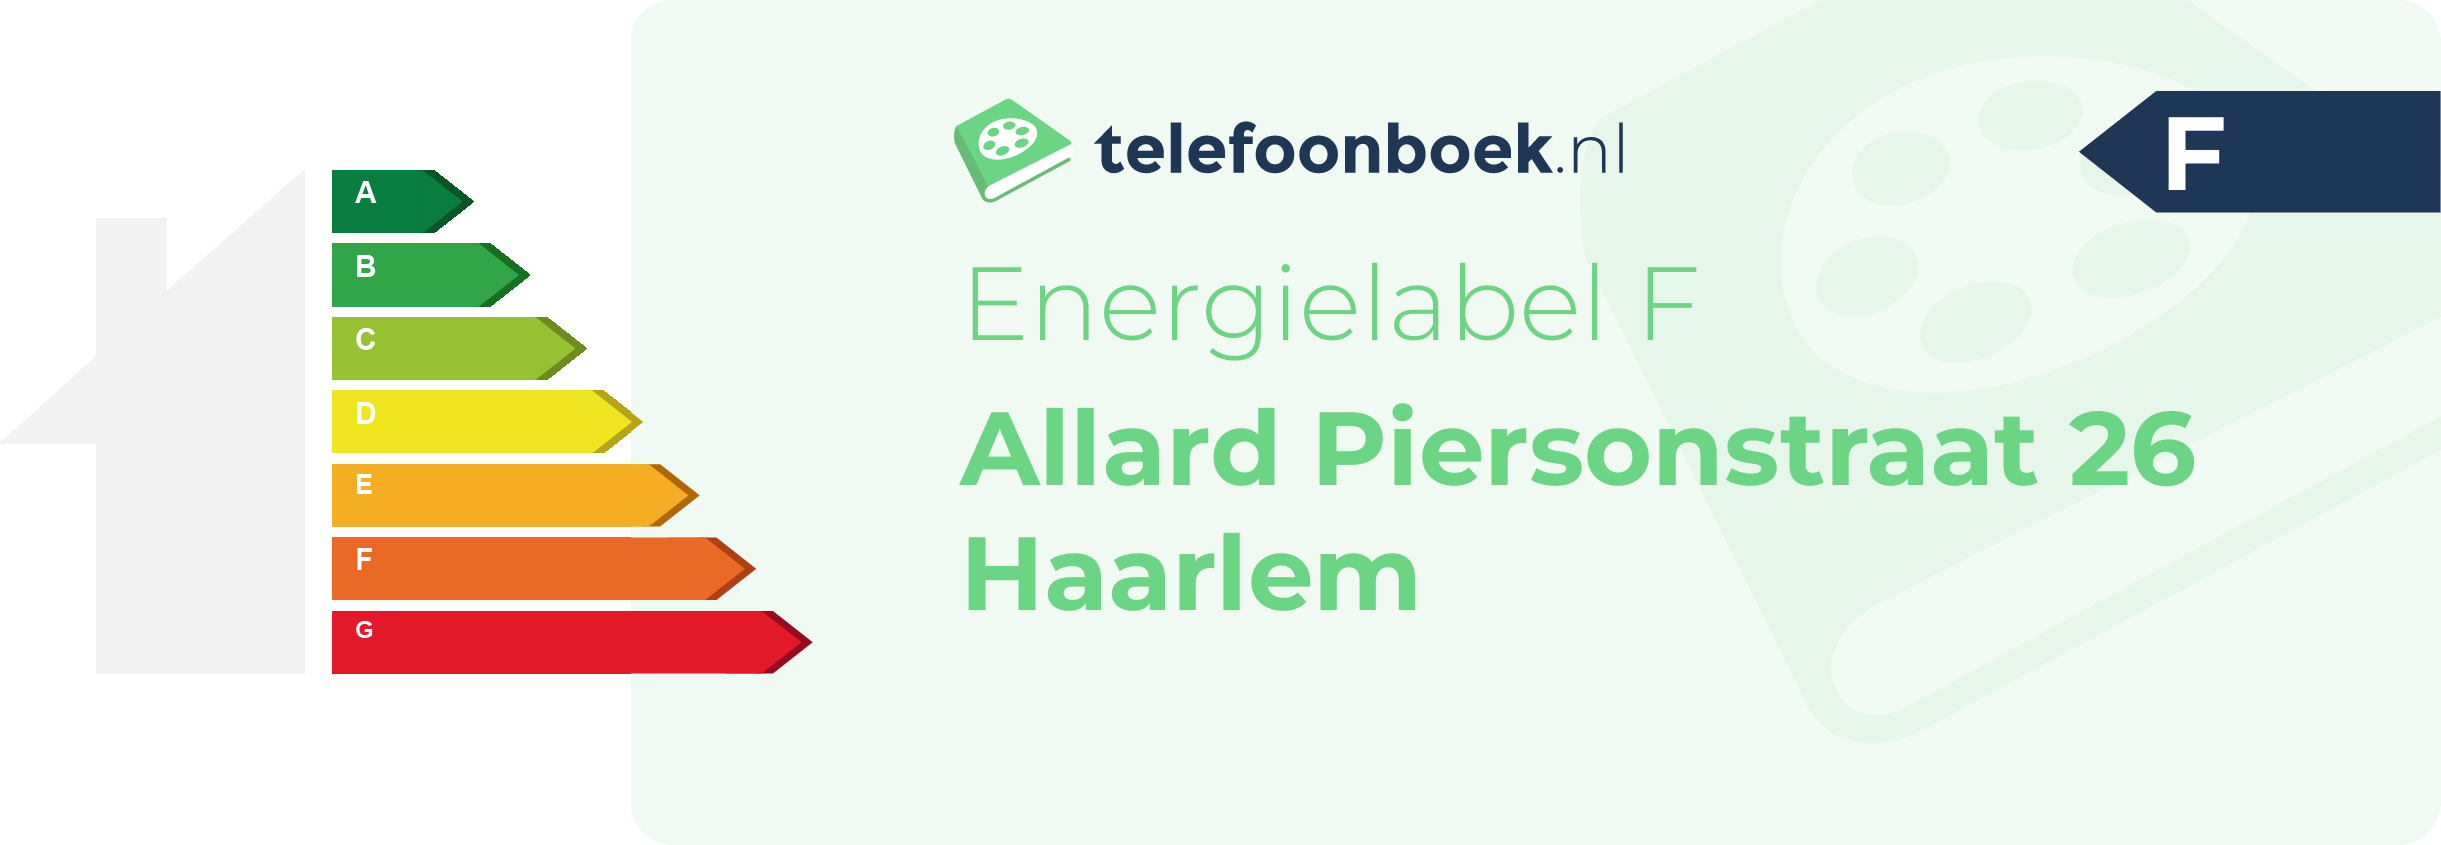 Energielabel Allard Piersonstraat 26 Haarlem